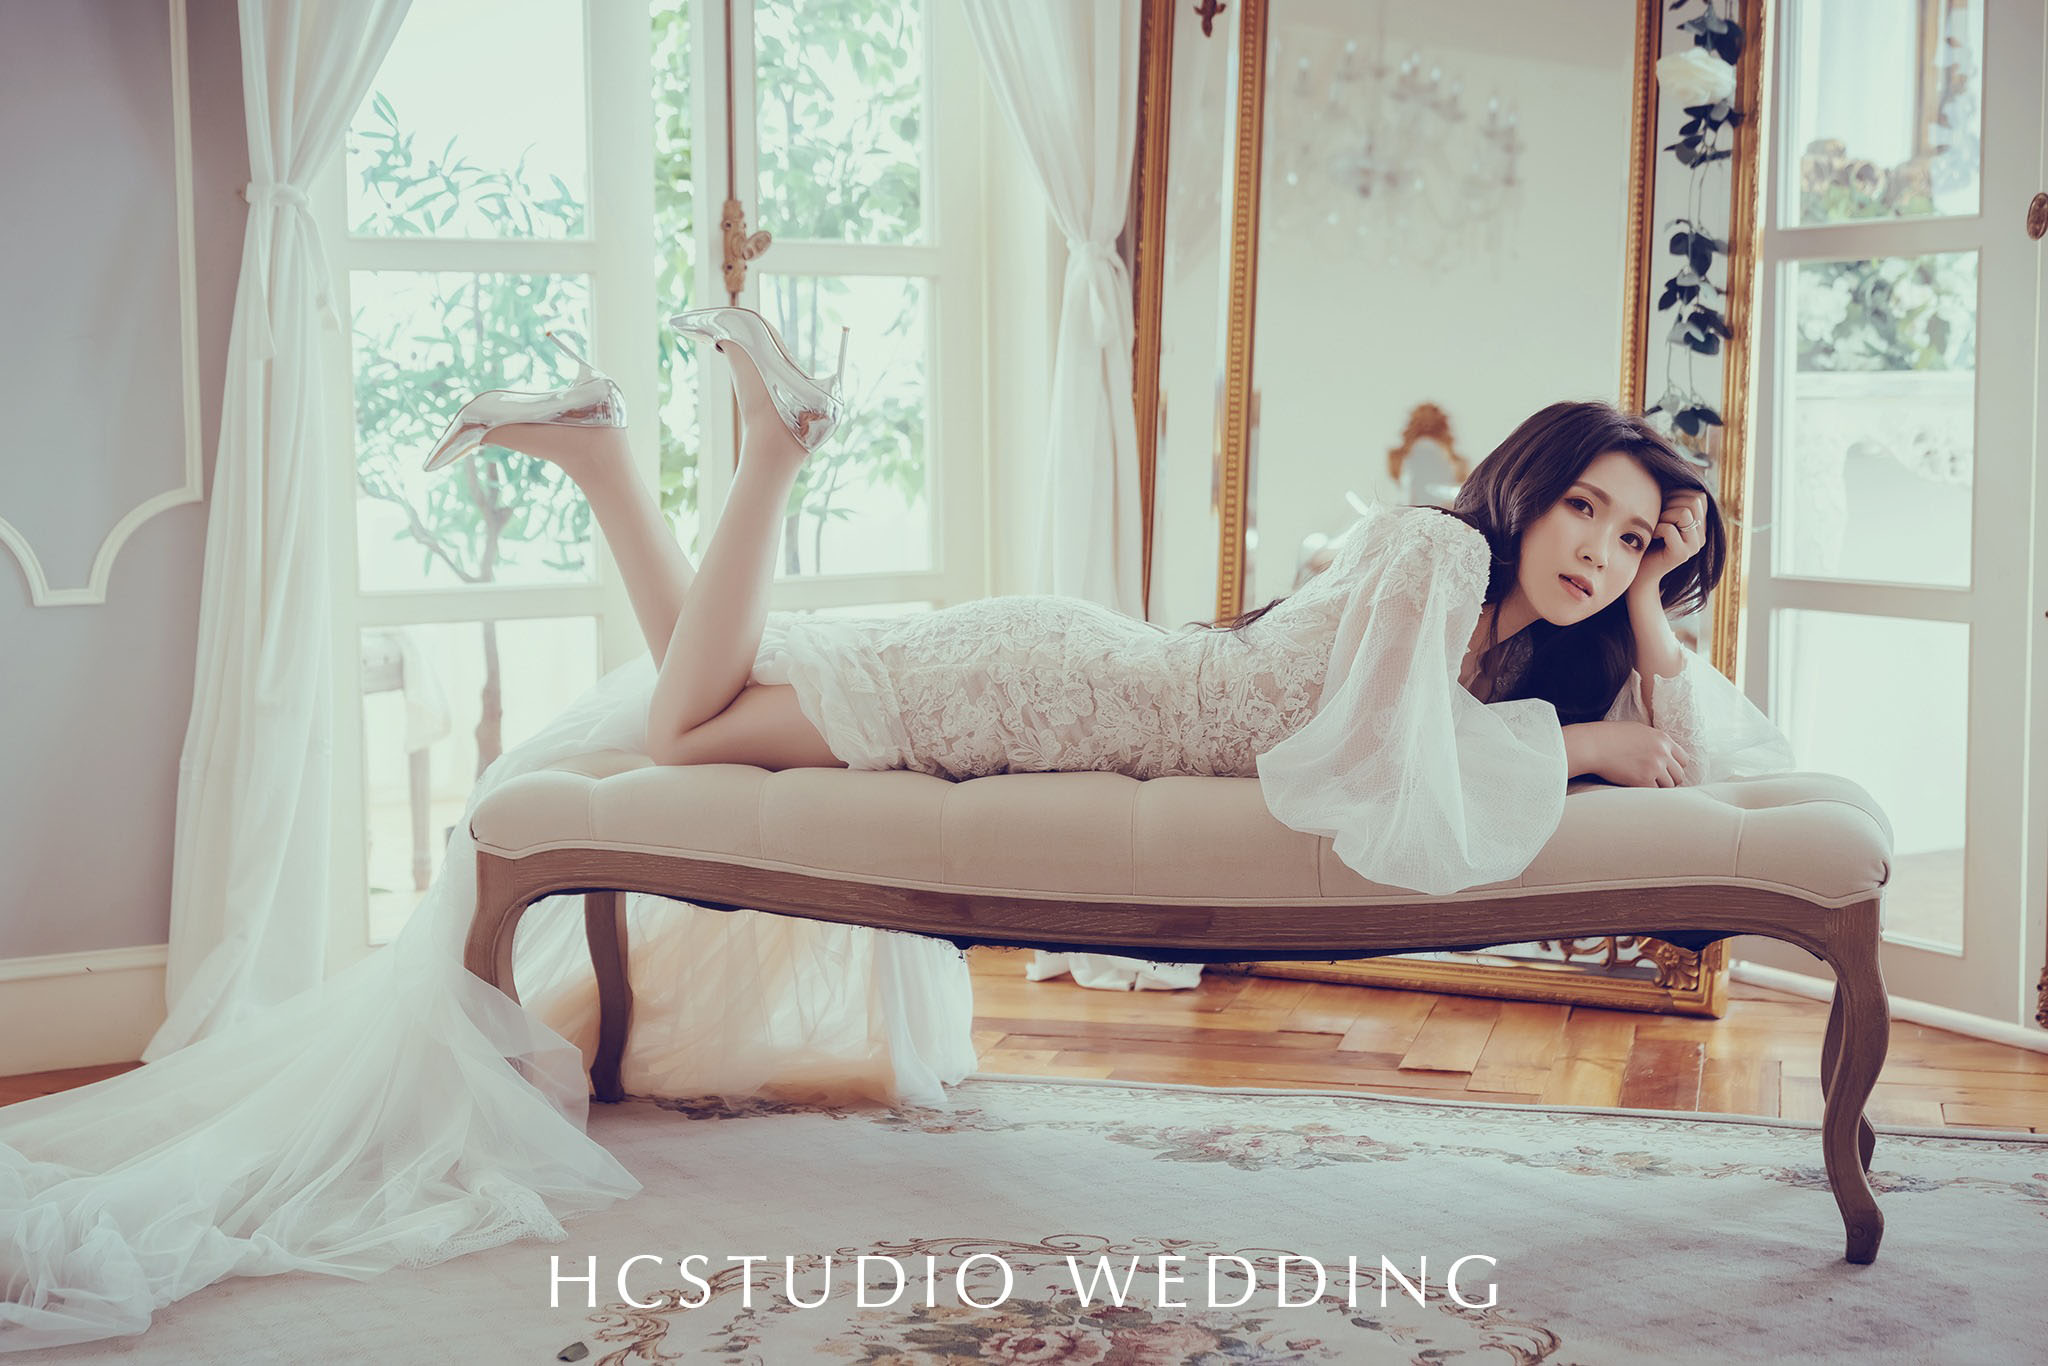 HCstudio手工婚紗 攝影工作室。桃園店